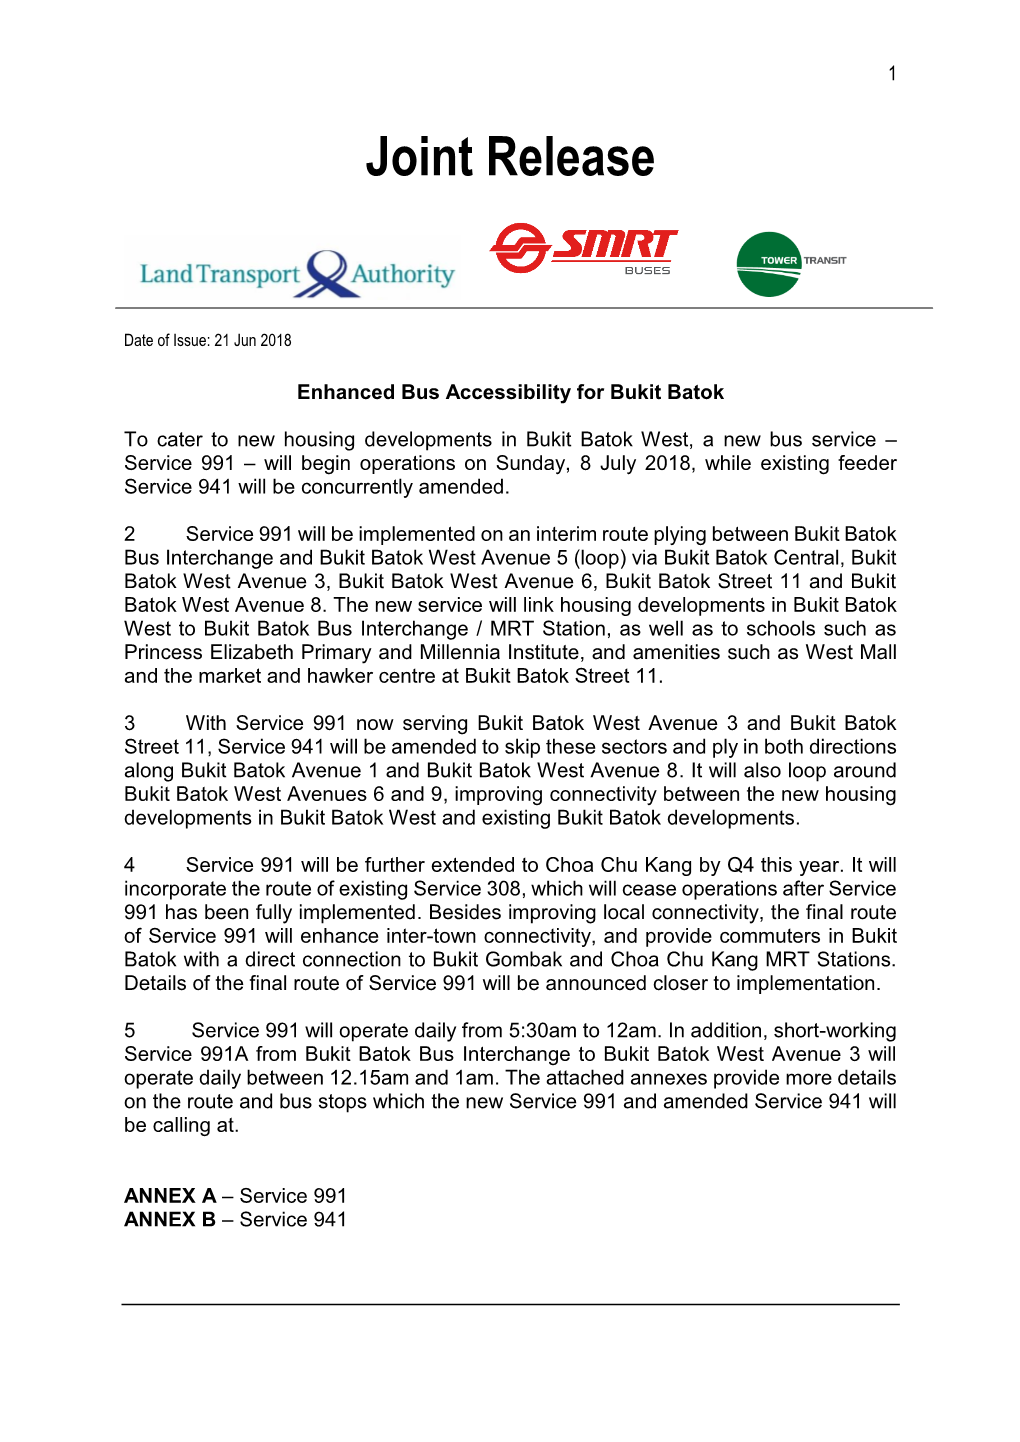 Enhanced Bus Accessibility for Bukit Batok